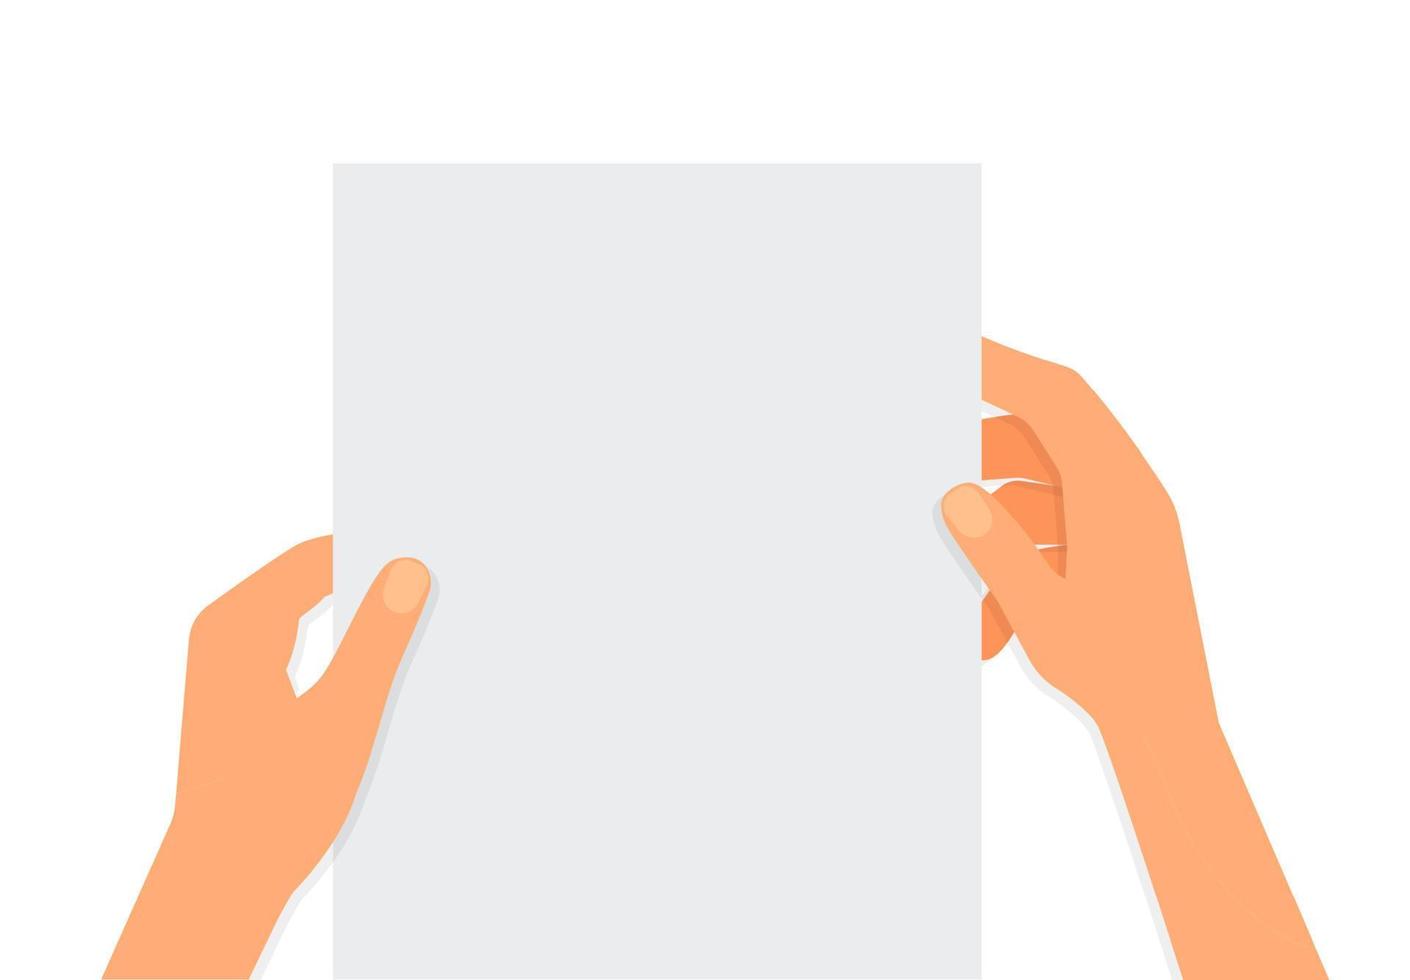 ilustración plana de manos sosteniendo una hoja de papel con lugar para texto sobre un fondo blanco. aviso de maqueta. leer carta. plantilla vectorial para artículos, folletos y su diseño. vector